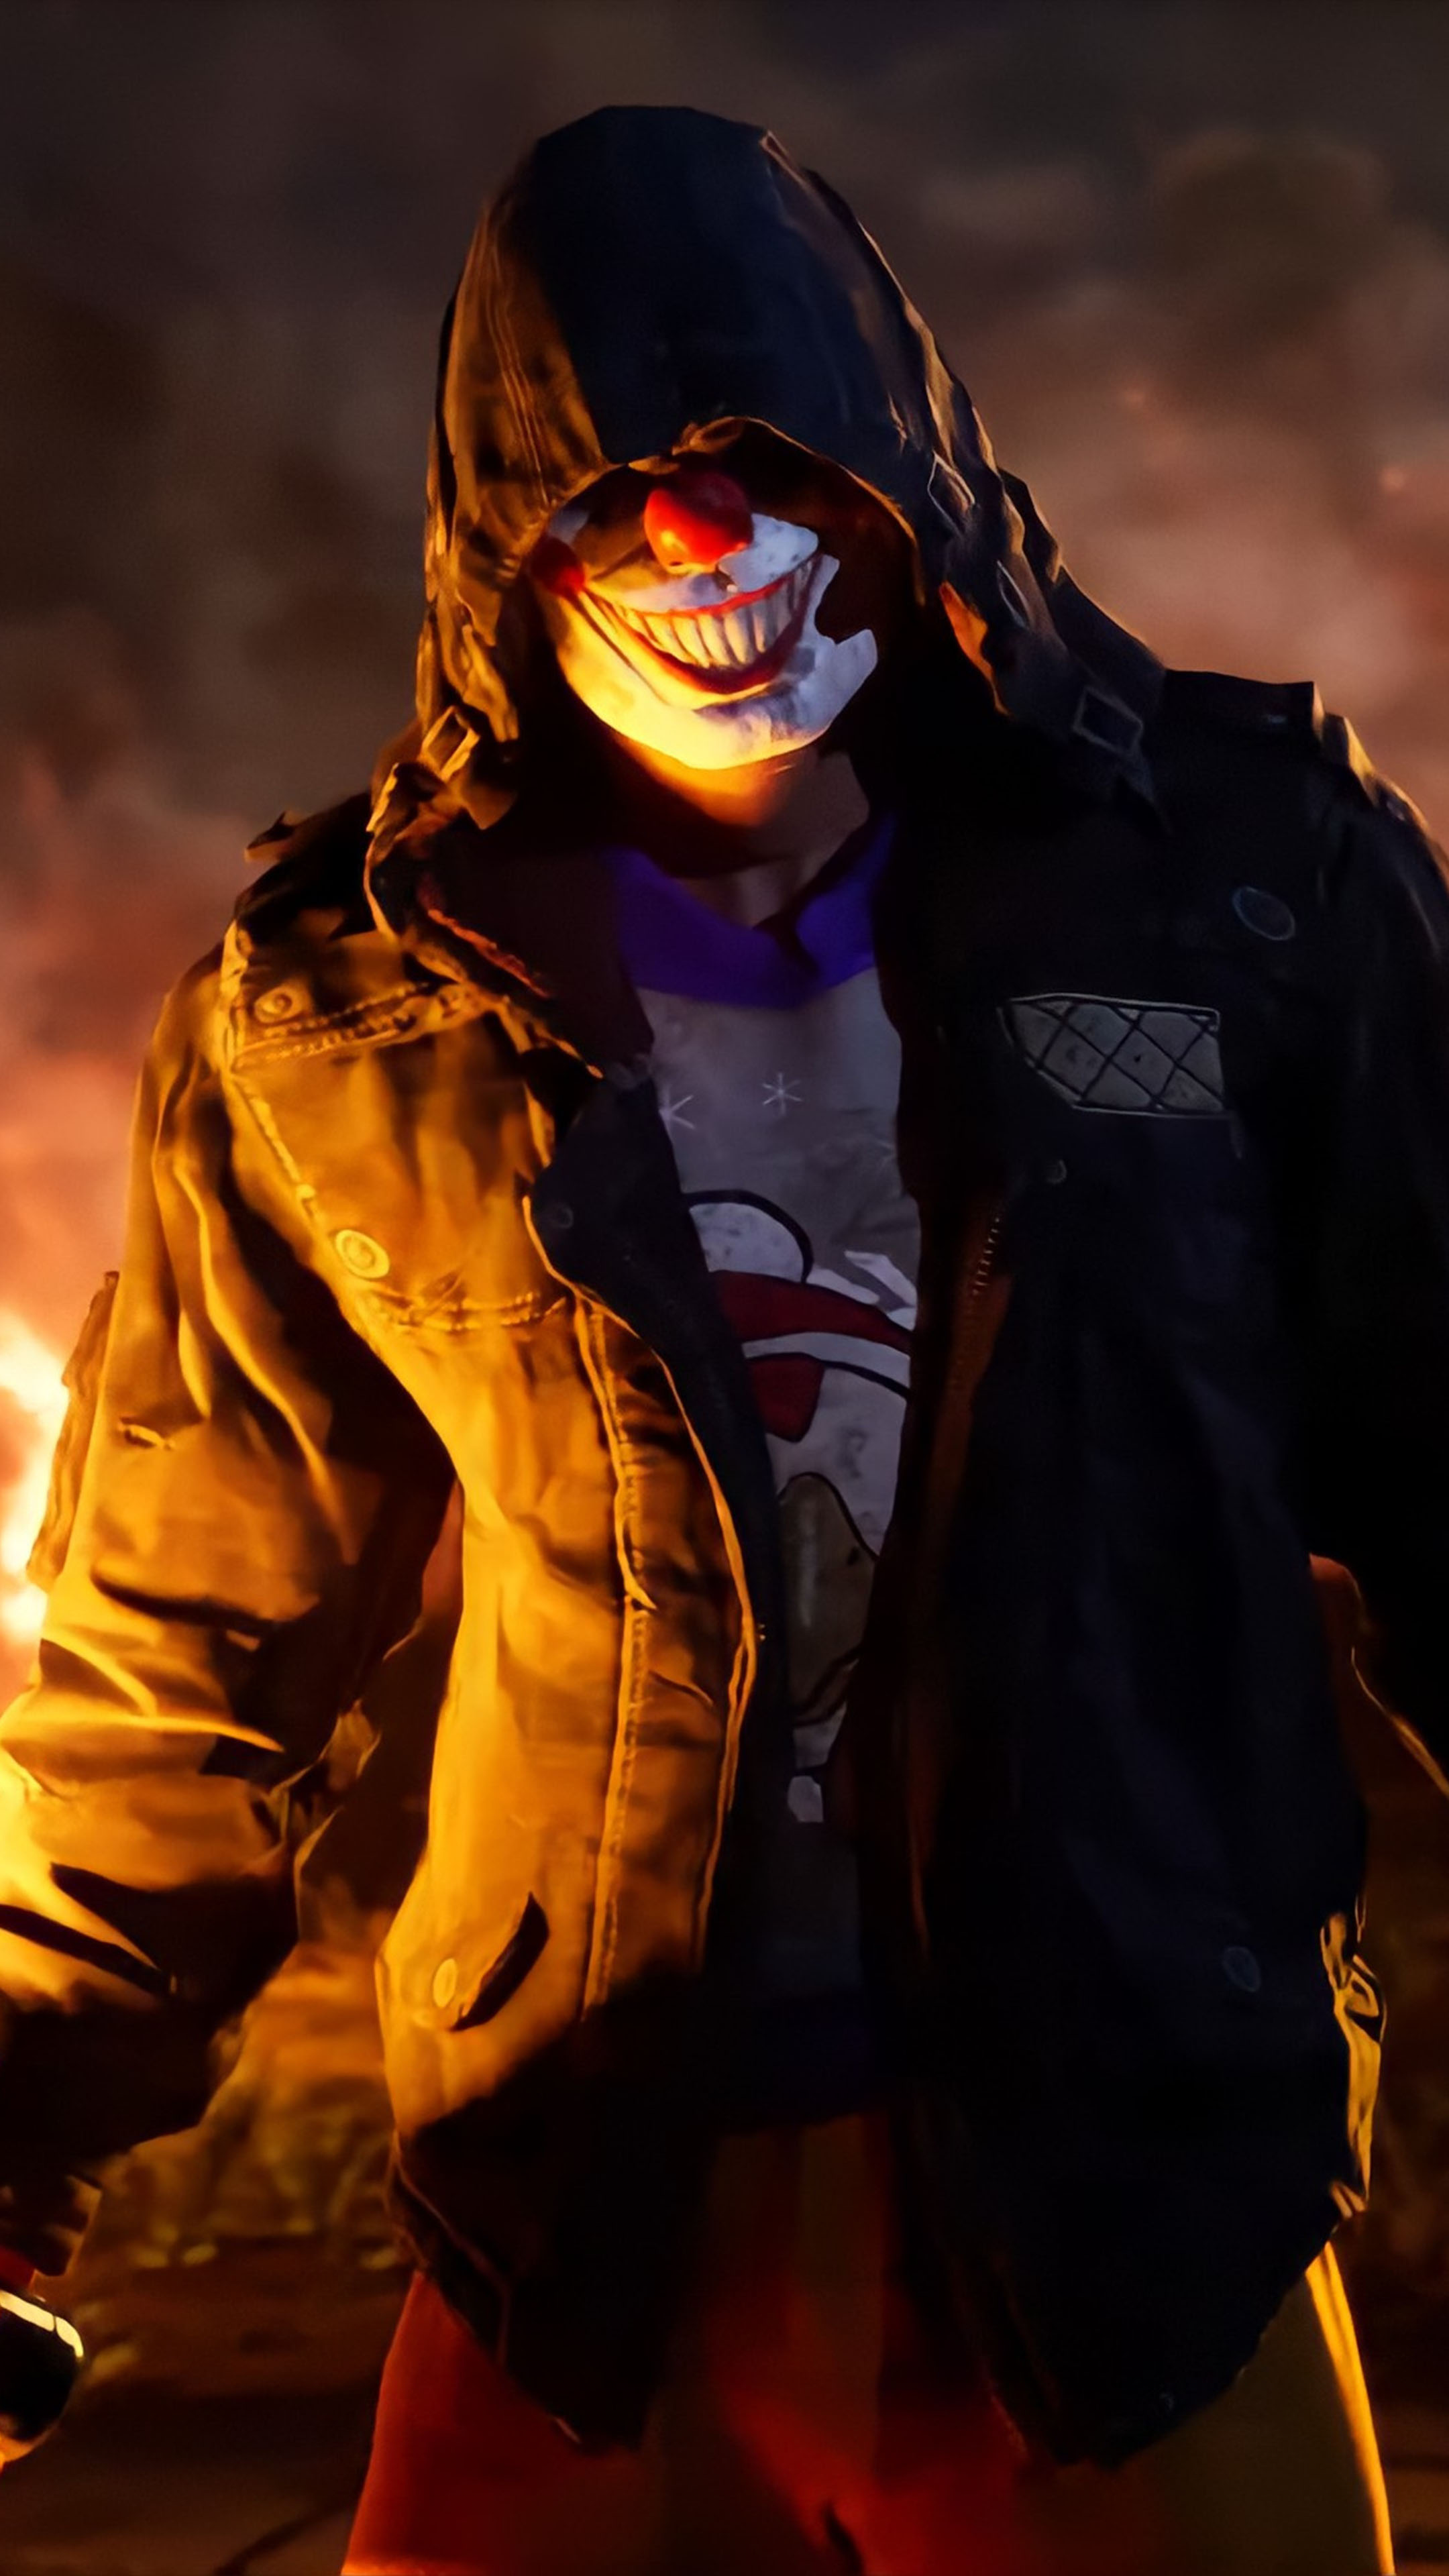 Joker: Hãy xem bức ảnh liên quan đến chàng Joker huyền thoại để được tận hưởng những trận cười lớn nhất và cảm nhận được vẻ đẹp đầy bí ẩn của thành phố Gotham.